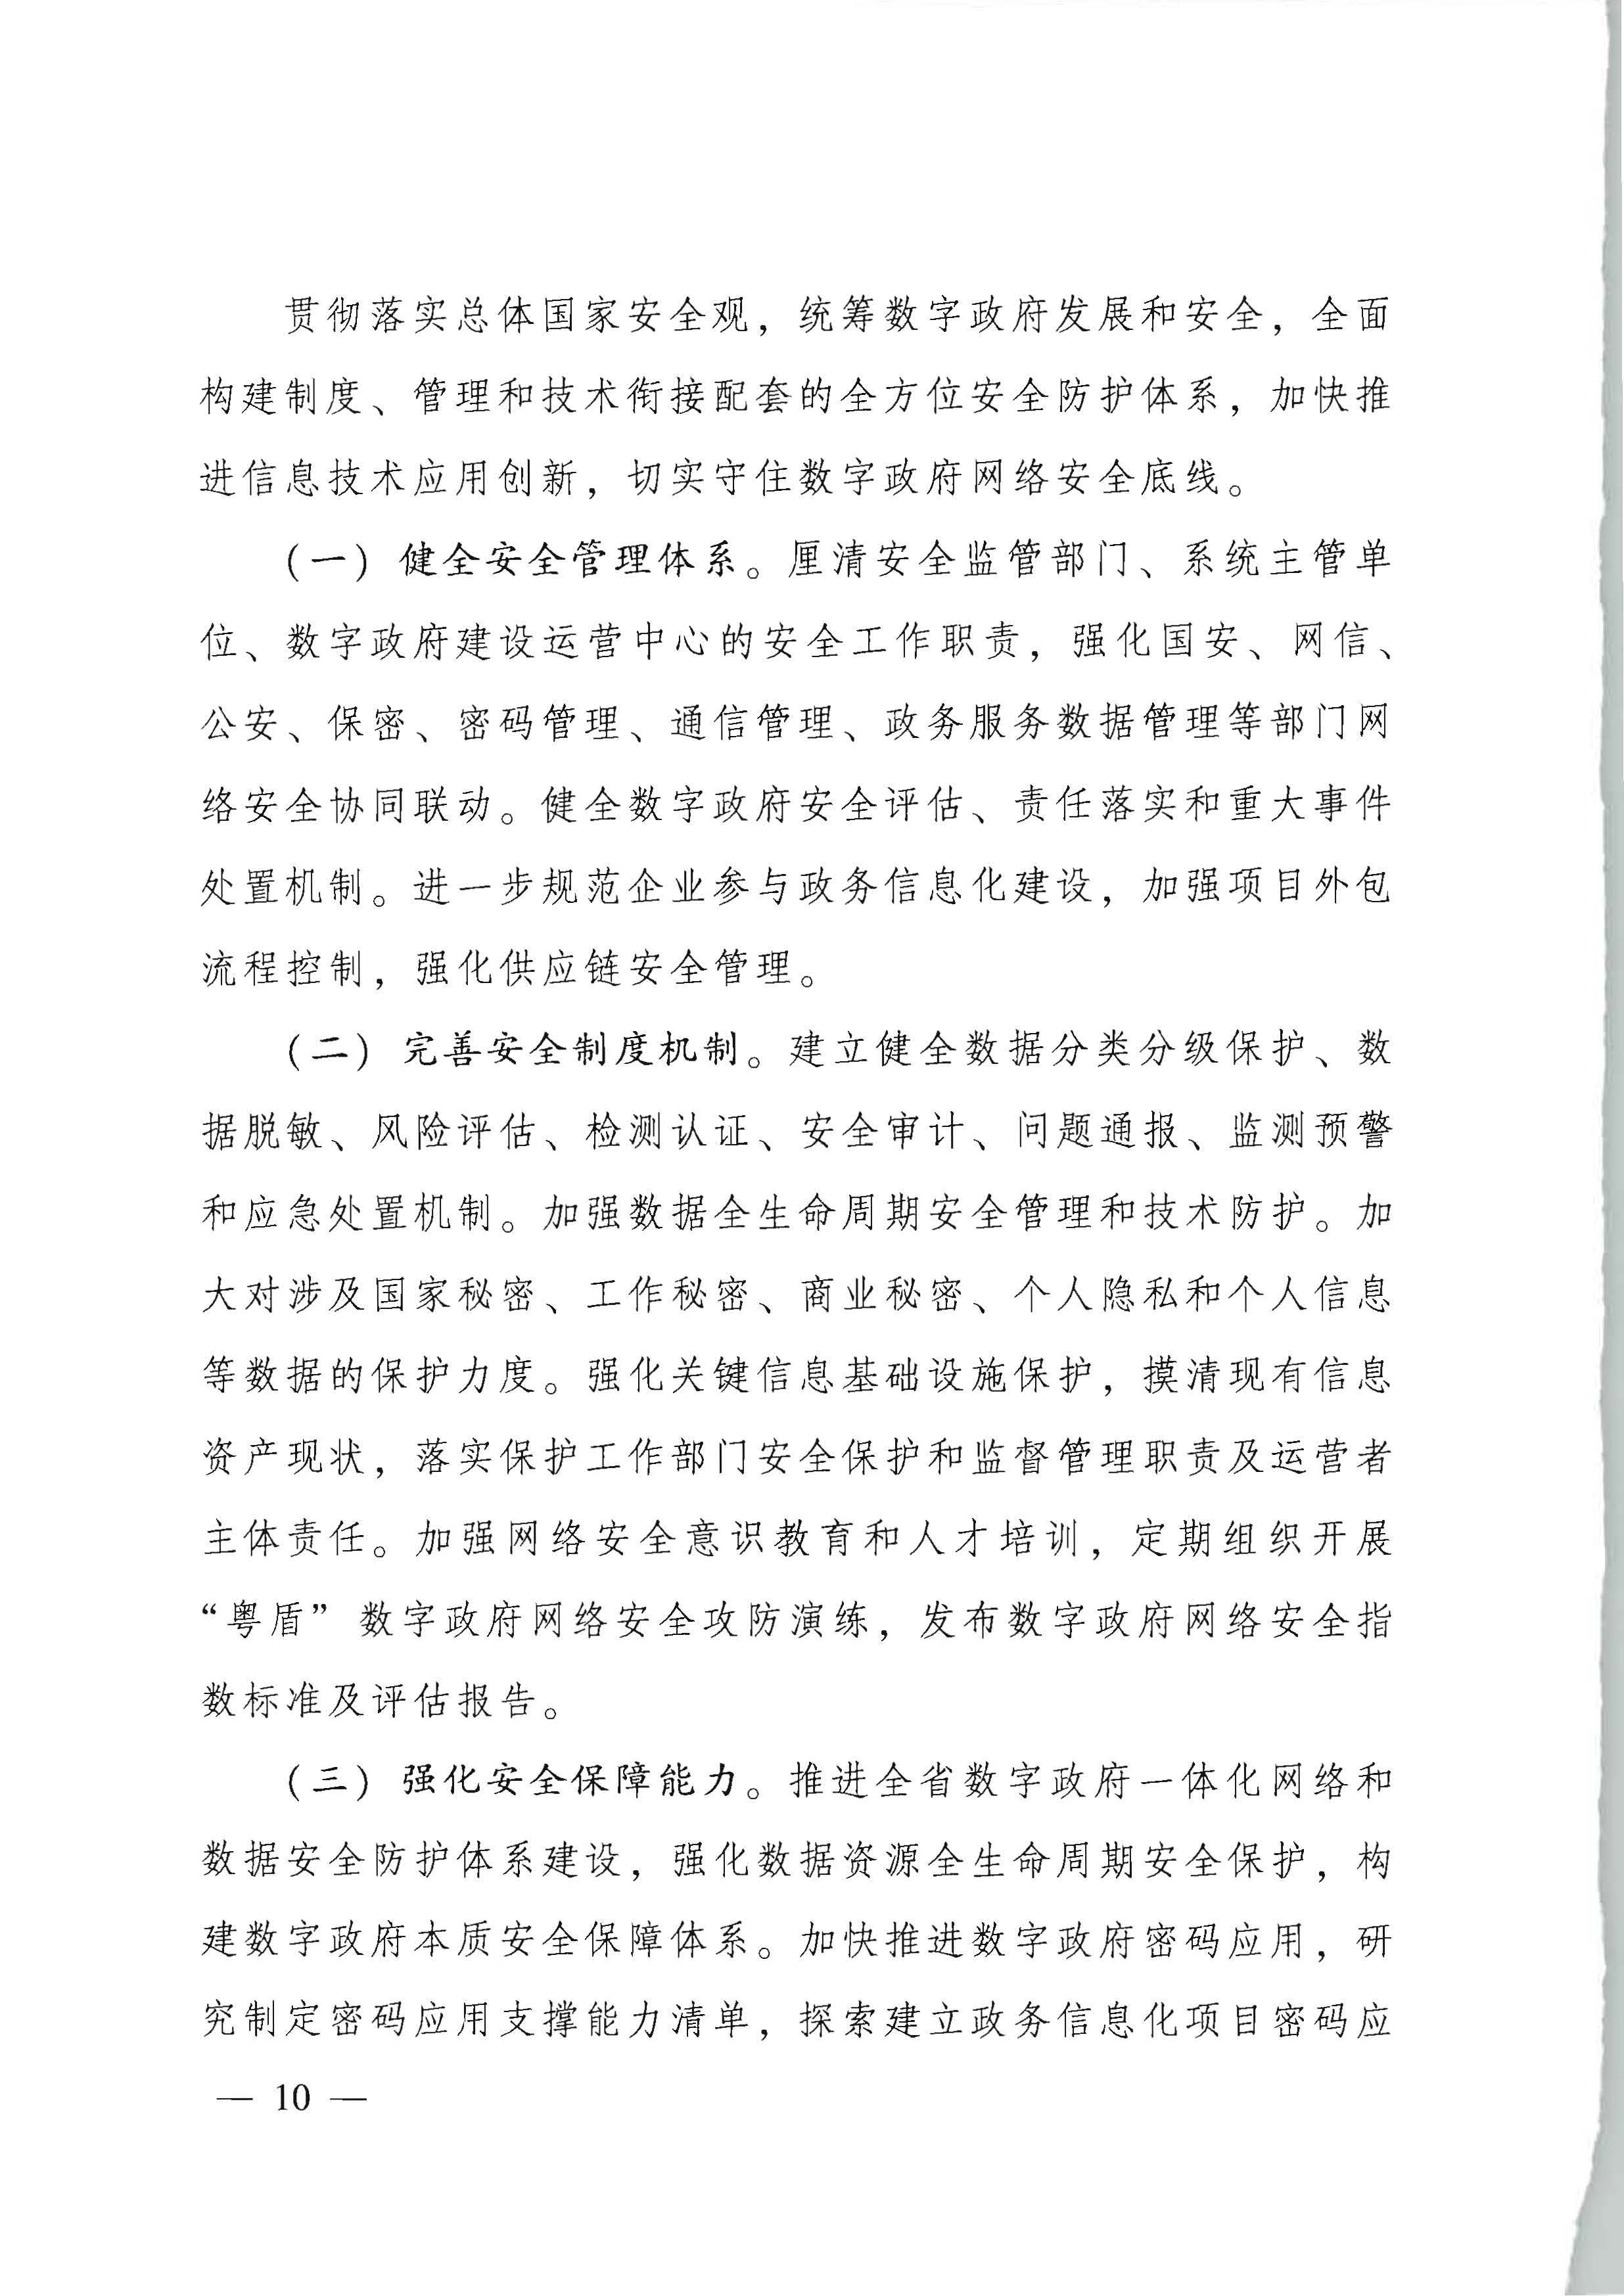 广东省人民政府关于进一步深化数字政府改革建设的实施意见_页面_10.jpg